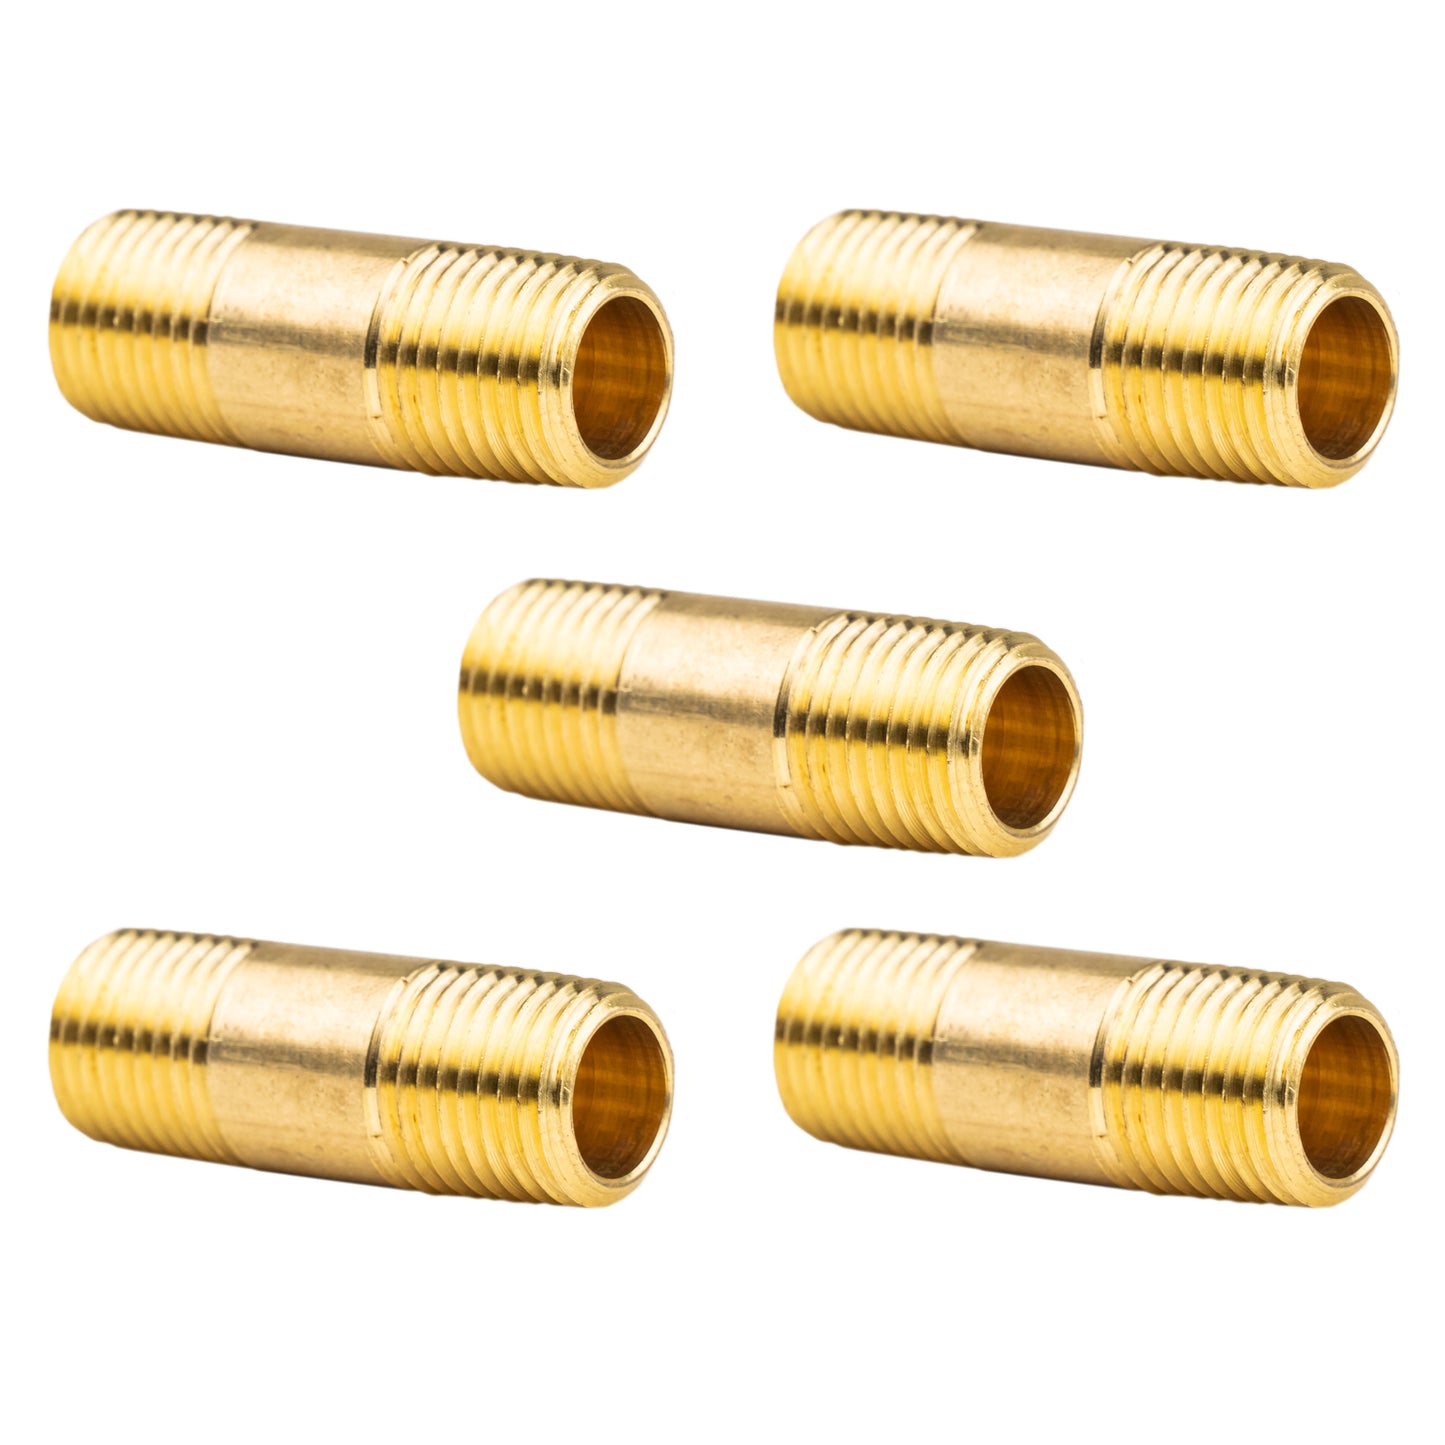 18in Long X 1/4ips Male Threaded Heavy Wall Brass Pipe Threaded 1/4in Long  on